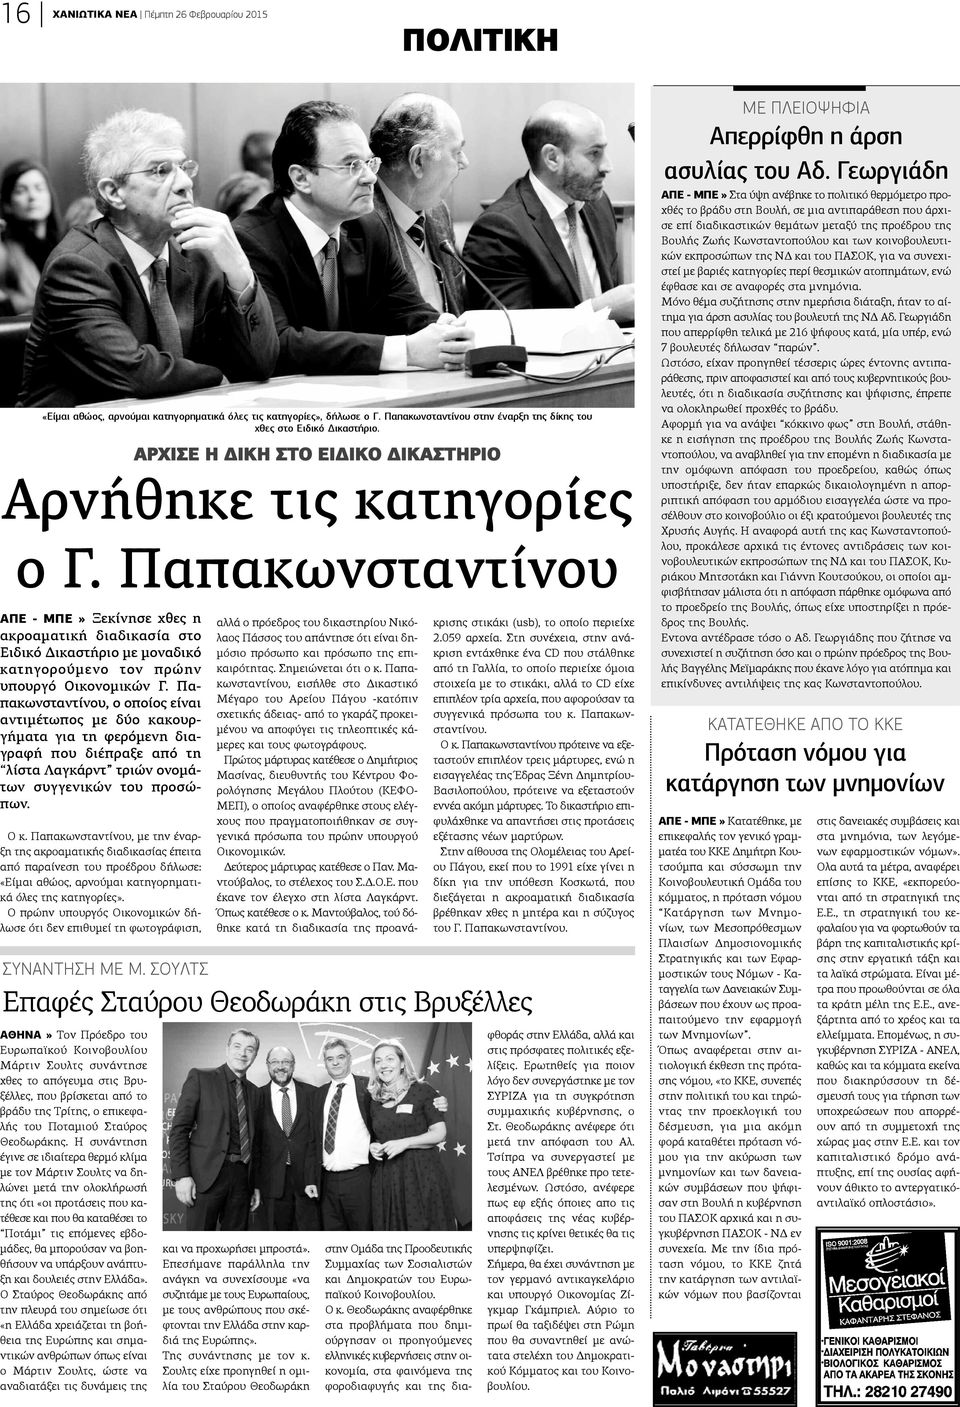 Παπακωνσταντίνου ΑΠΕ - ΜΠΕ» Ξεκίνησε χθες η κροαματική διαδικασία στο ιδικό Δικαστήριο με μοναδικό ατηγορούμενο τον πρώην πουργό Οικονομικών Γ.